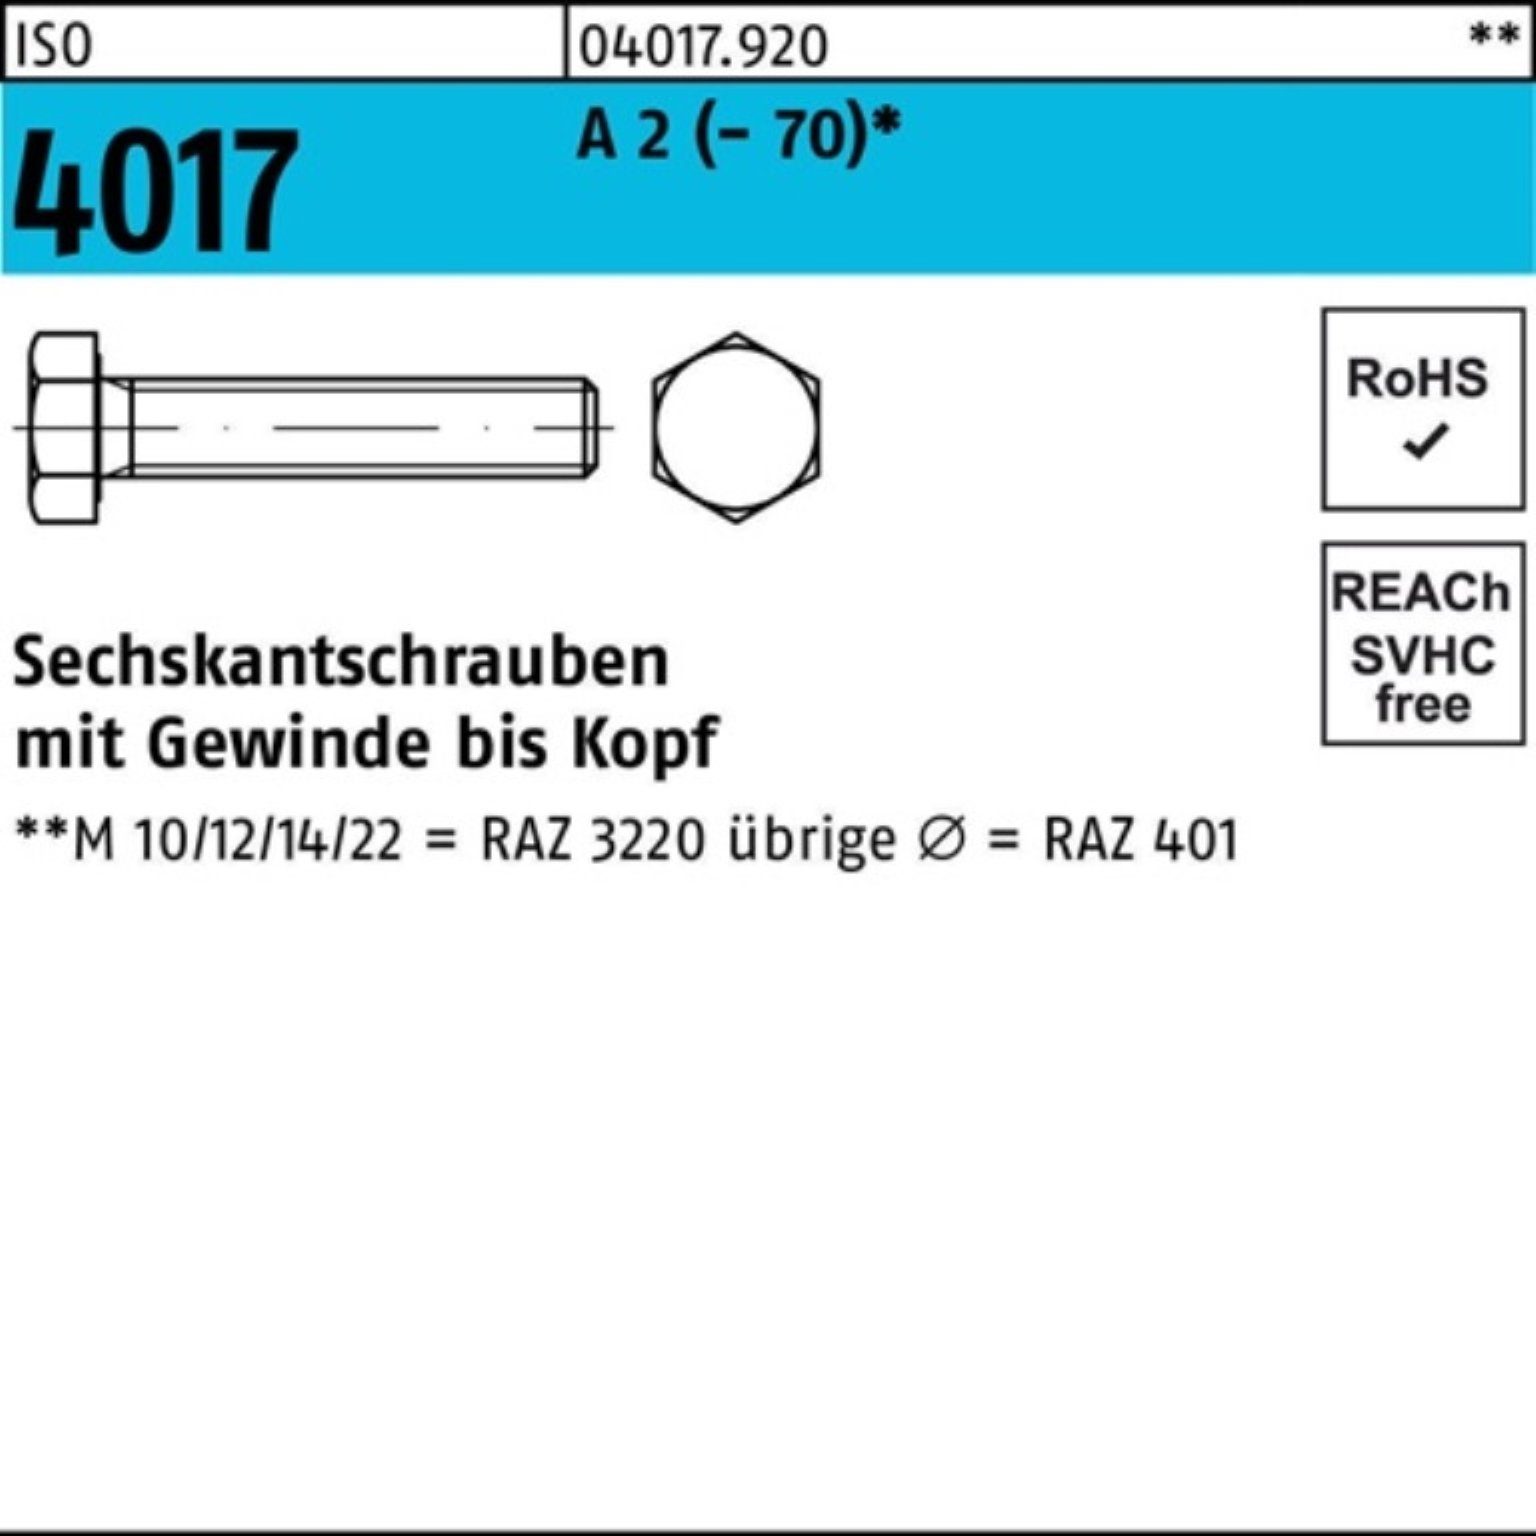 Bufab Sechskantschraube 100er Pack Sechskantschraube ISO 4017 VG M10x 14 A 2 (70) 100 Stück | Schrauben